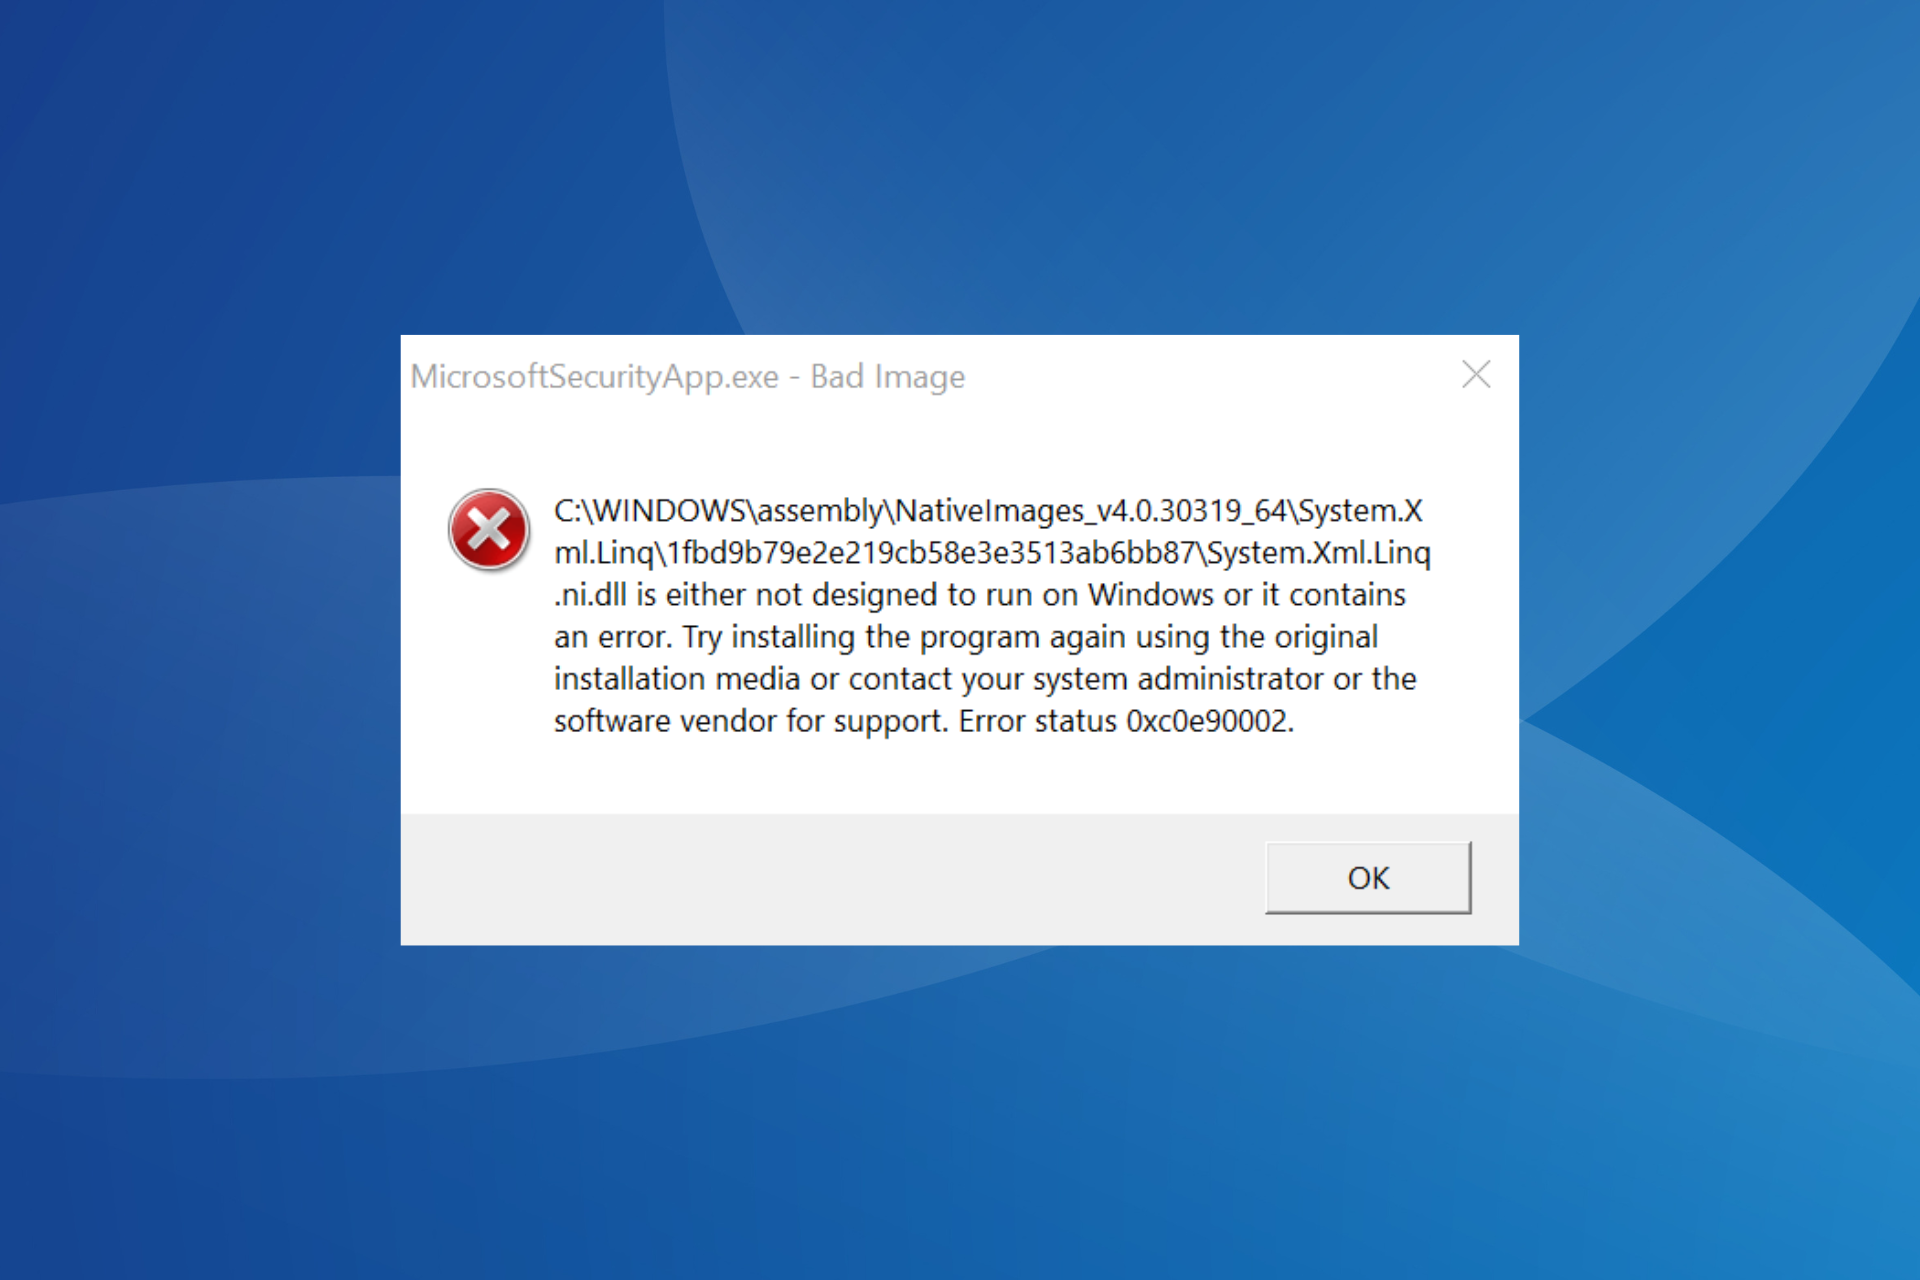 fix MicrosoftSecurityApp.exe Bad Image error